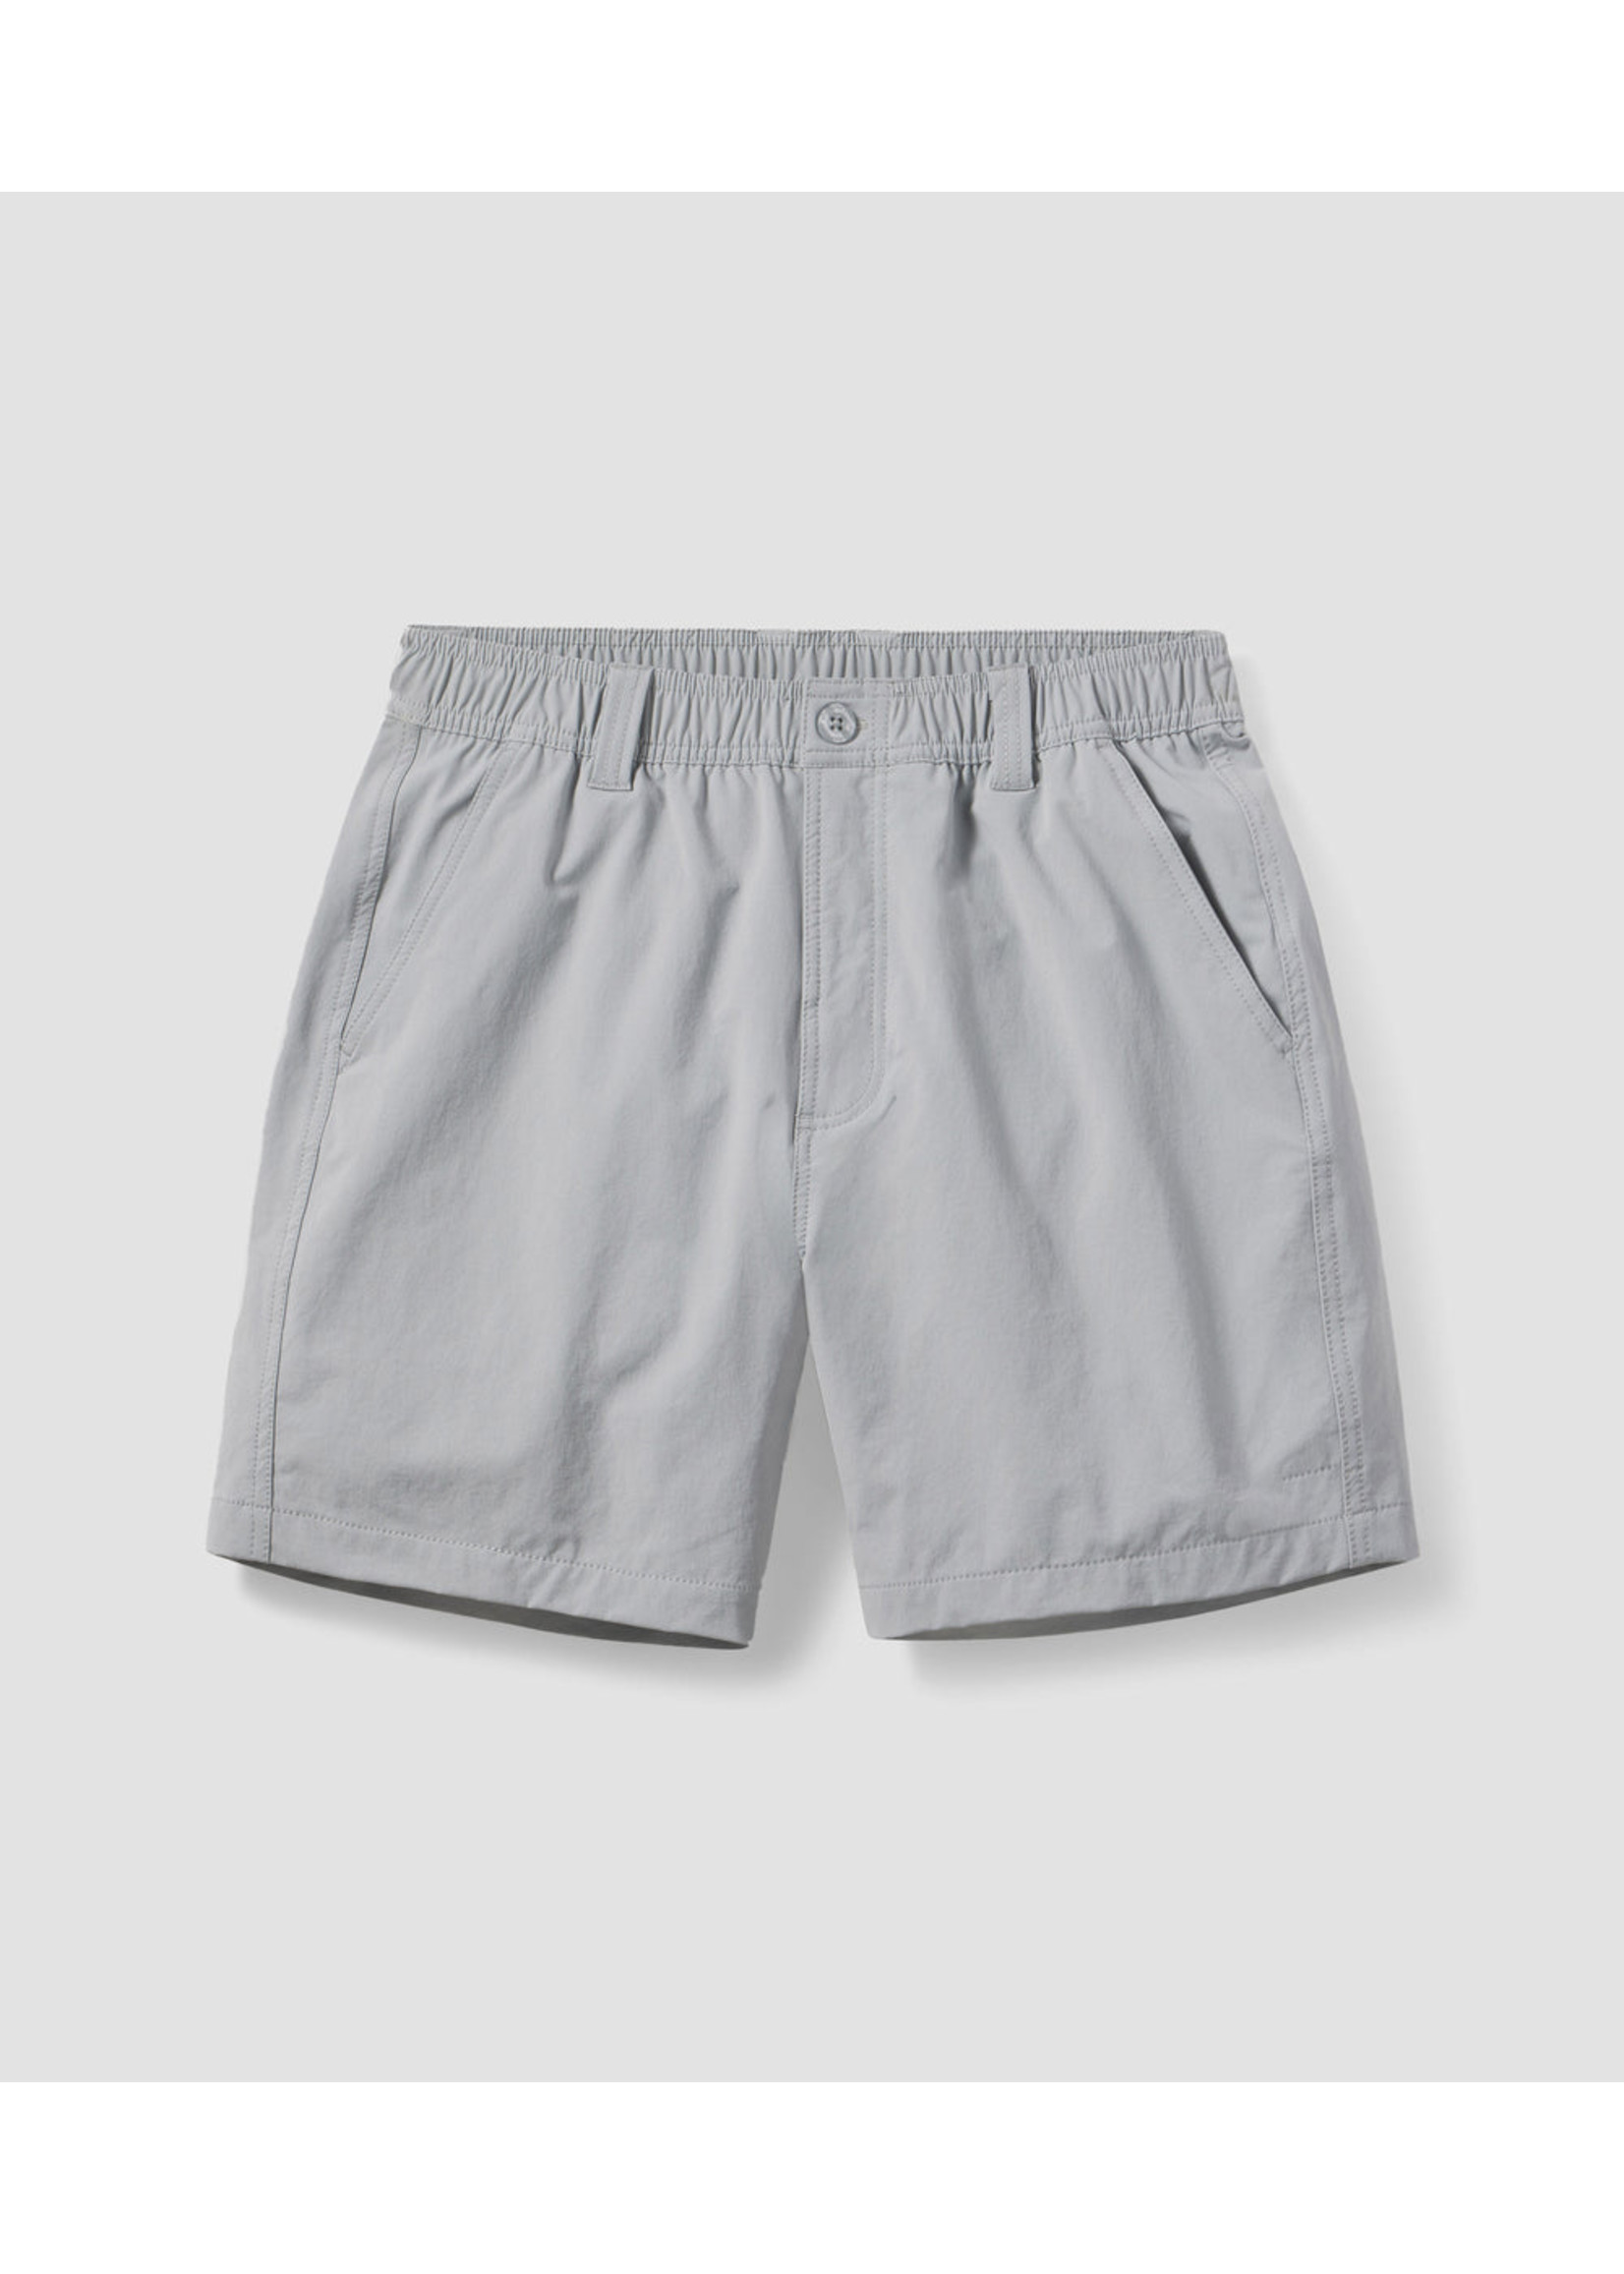 Southern Shirt Nomad Shorts